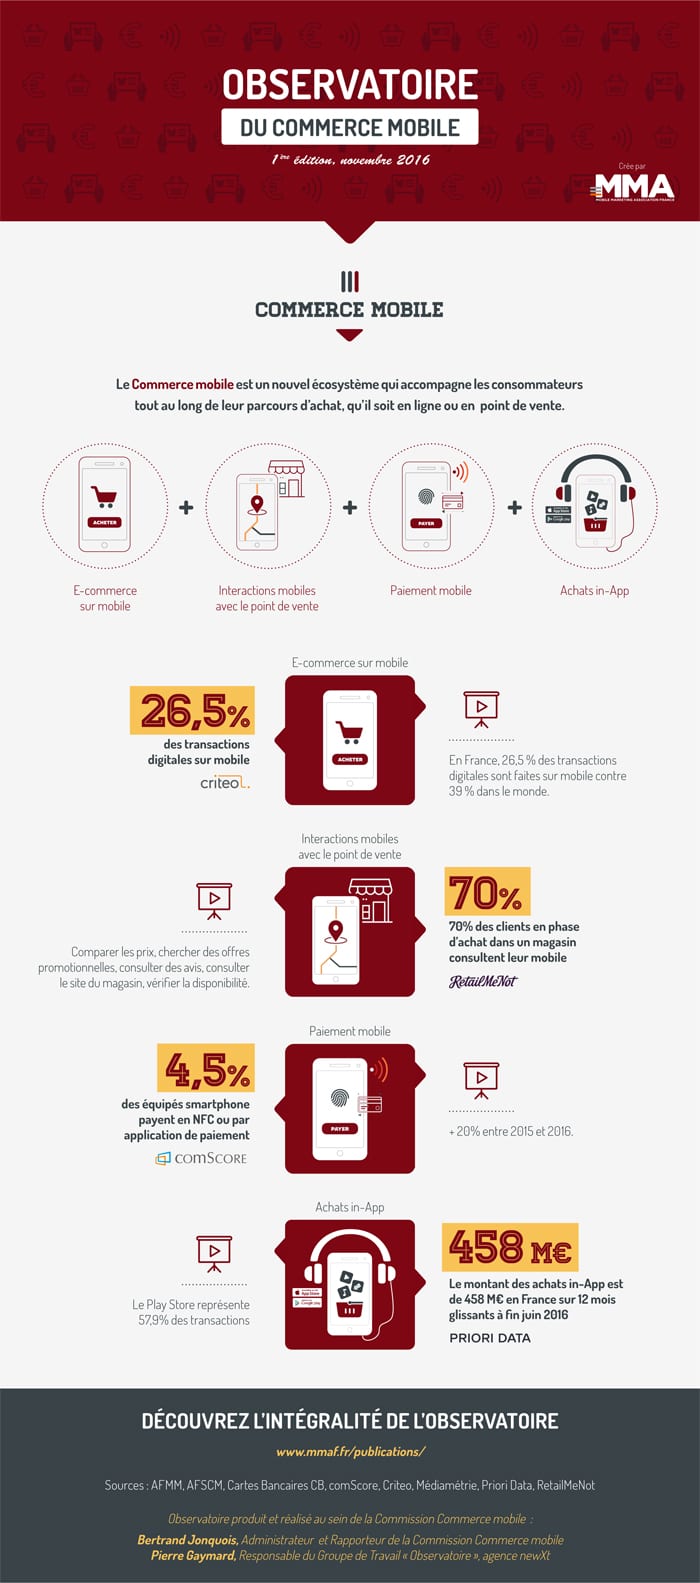 Infographie sur les chiffres clés du commerce mobile / m-commerce 2016